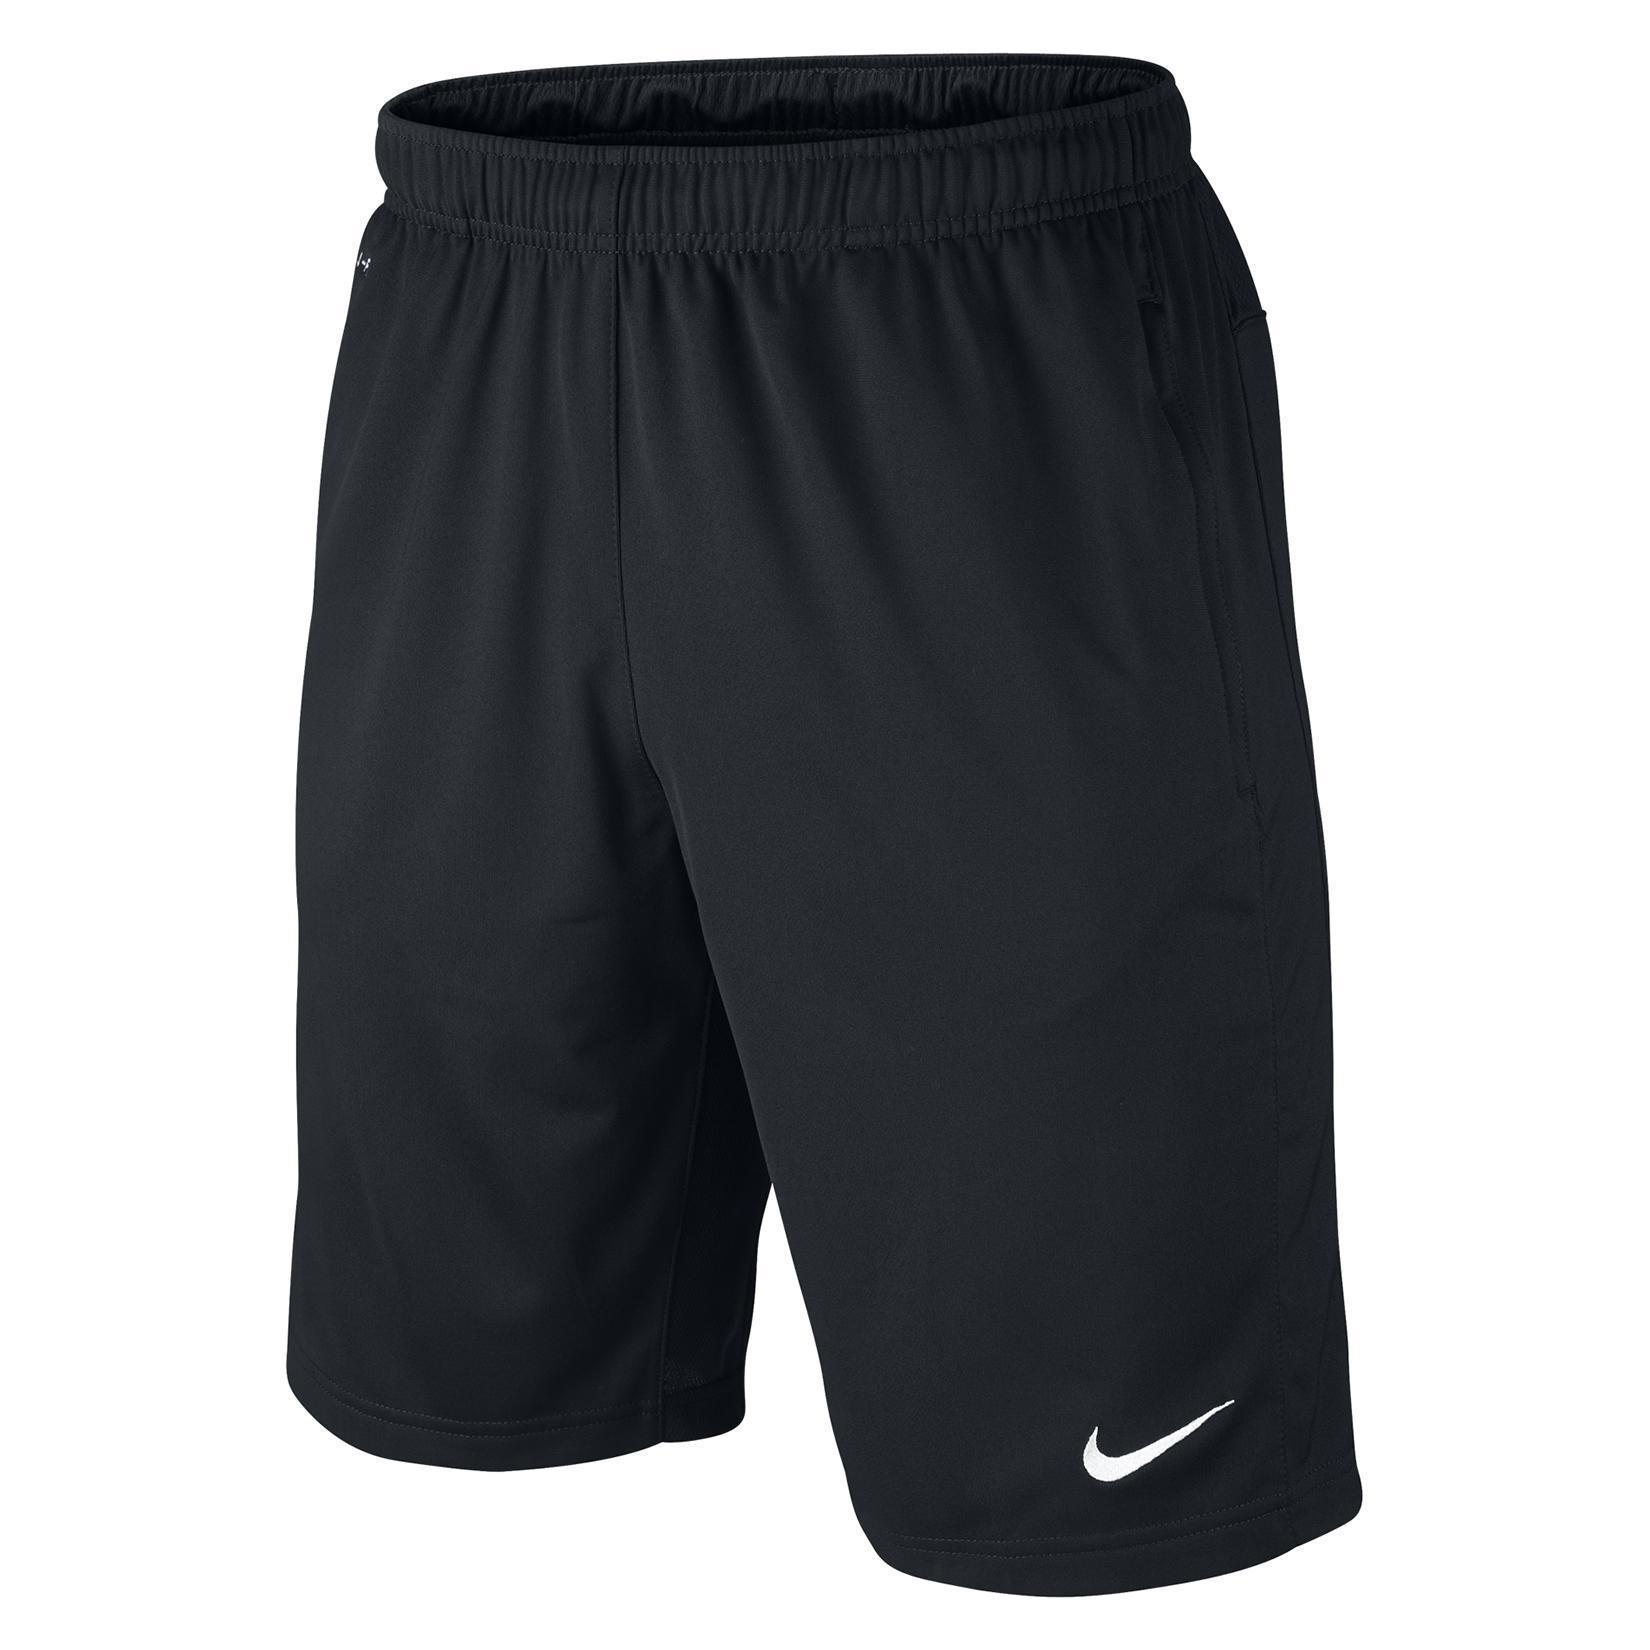 Nike Libero Knit Training Shorts With Pockets - Kitlocker.com